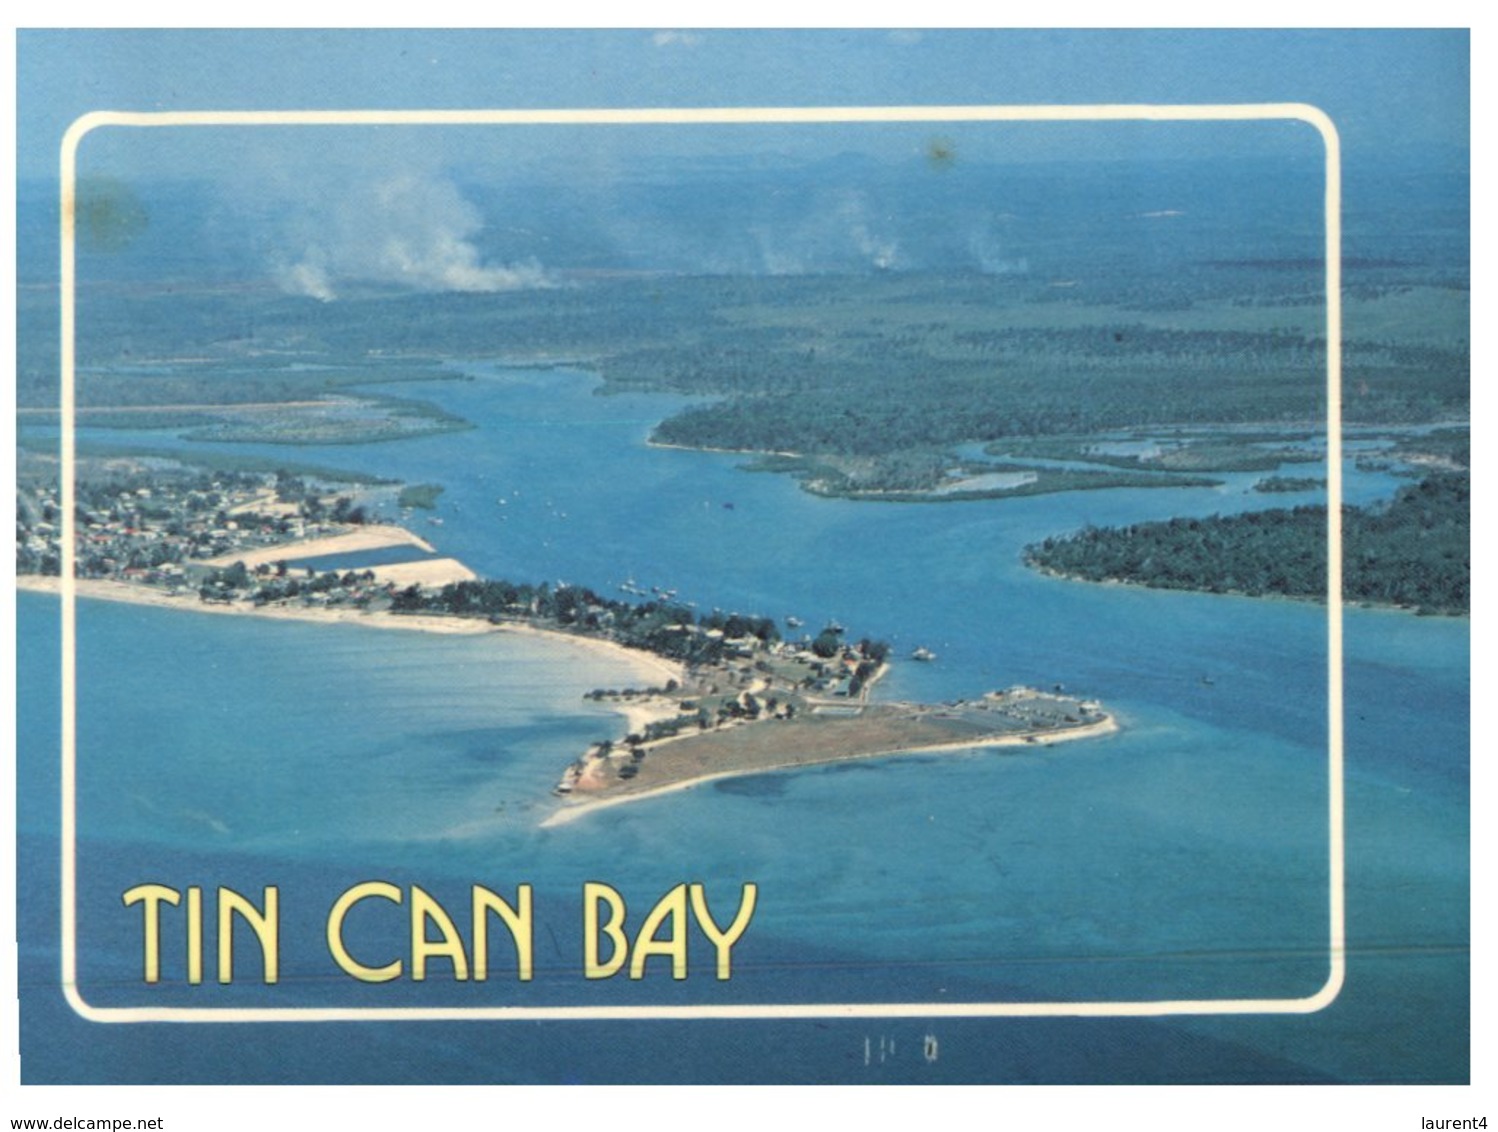 (103) Australia - QLD - Tin Can Bay - Sunshine Coast